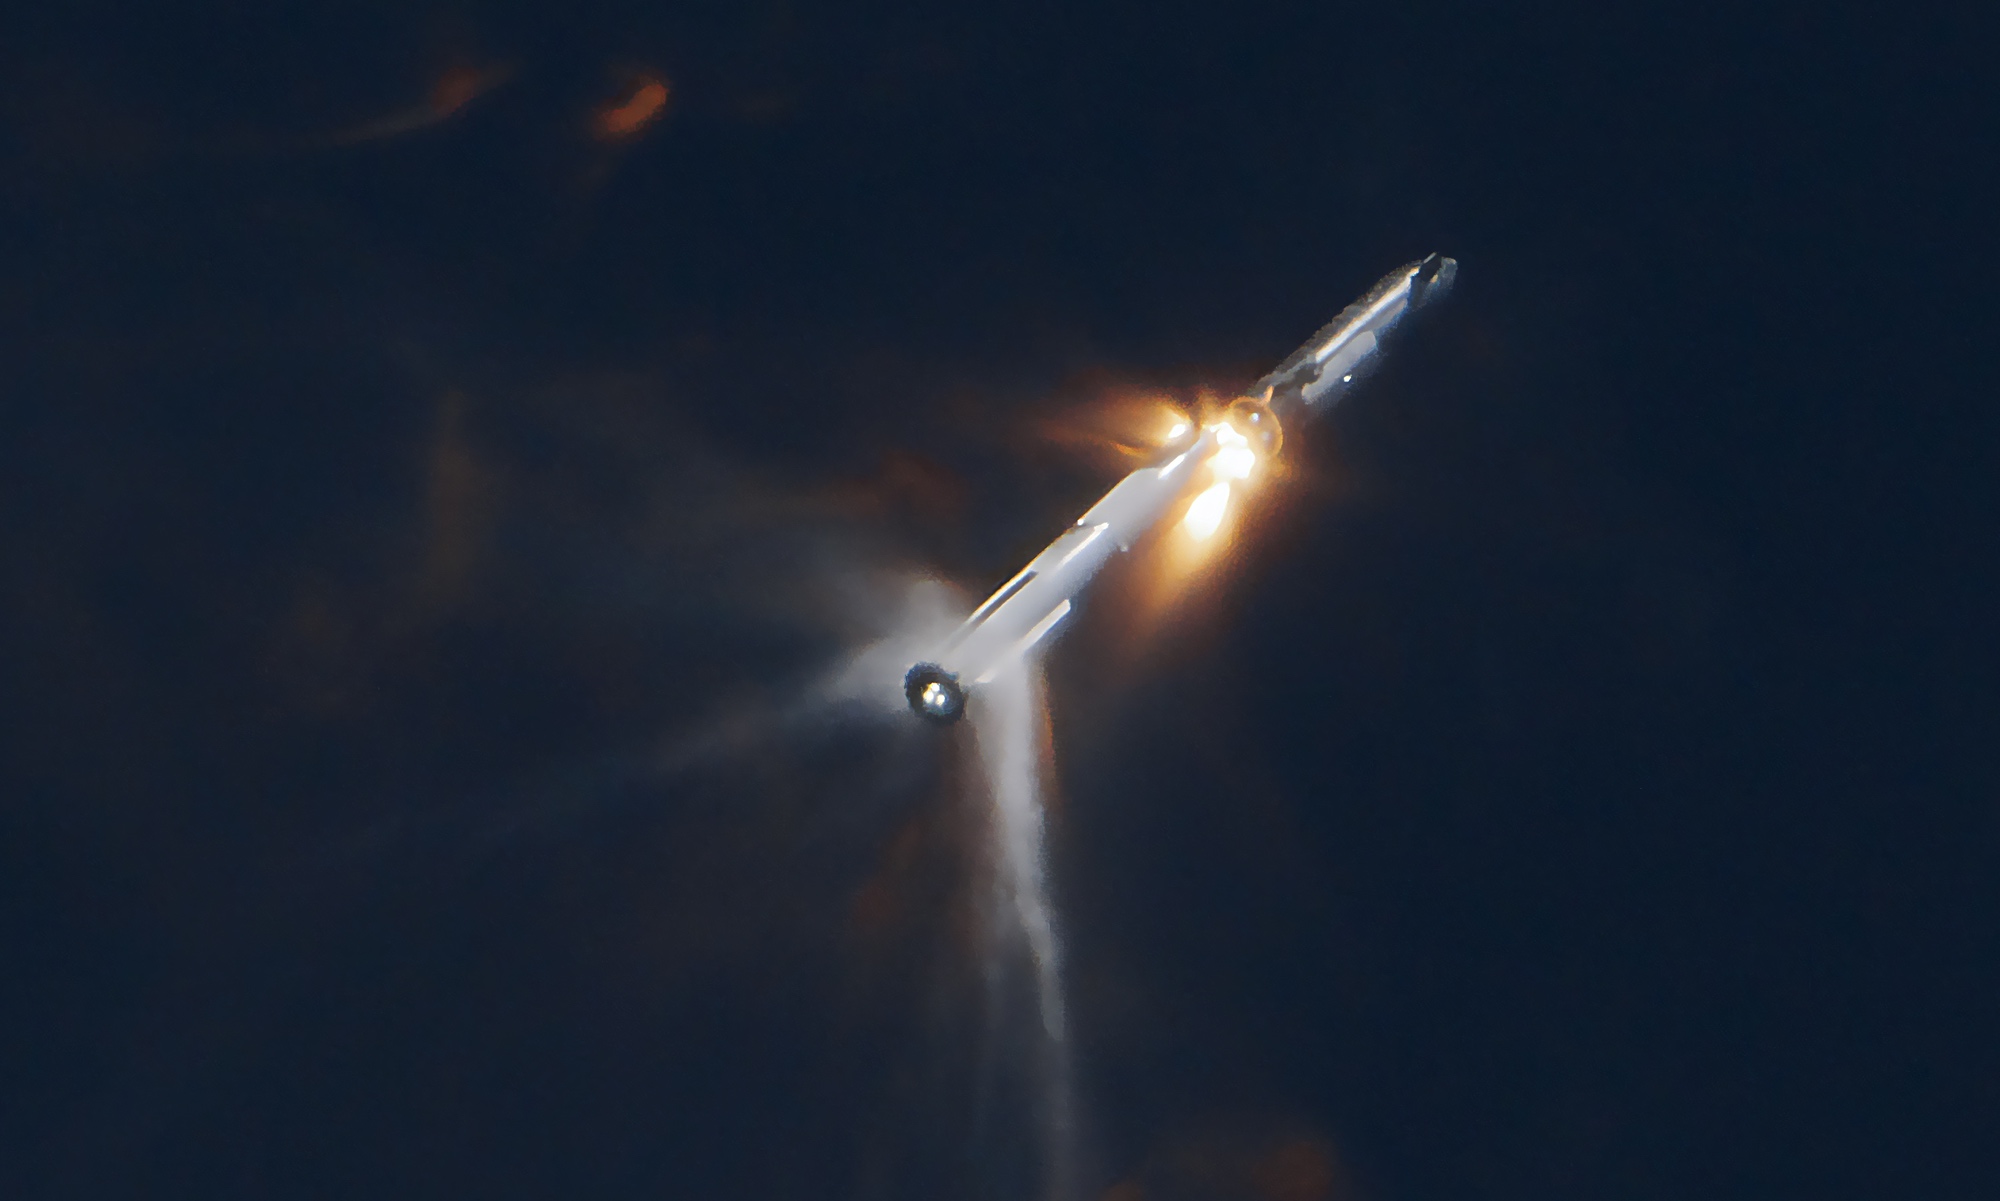 СпацеКс каже да је испуштање погонског горива изазвало губитак друге свемирске летелице